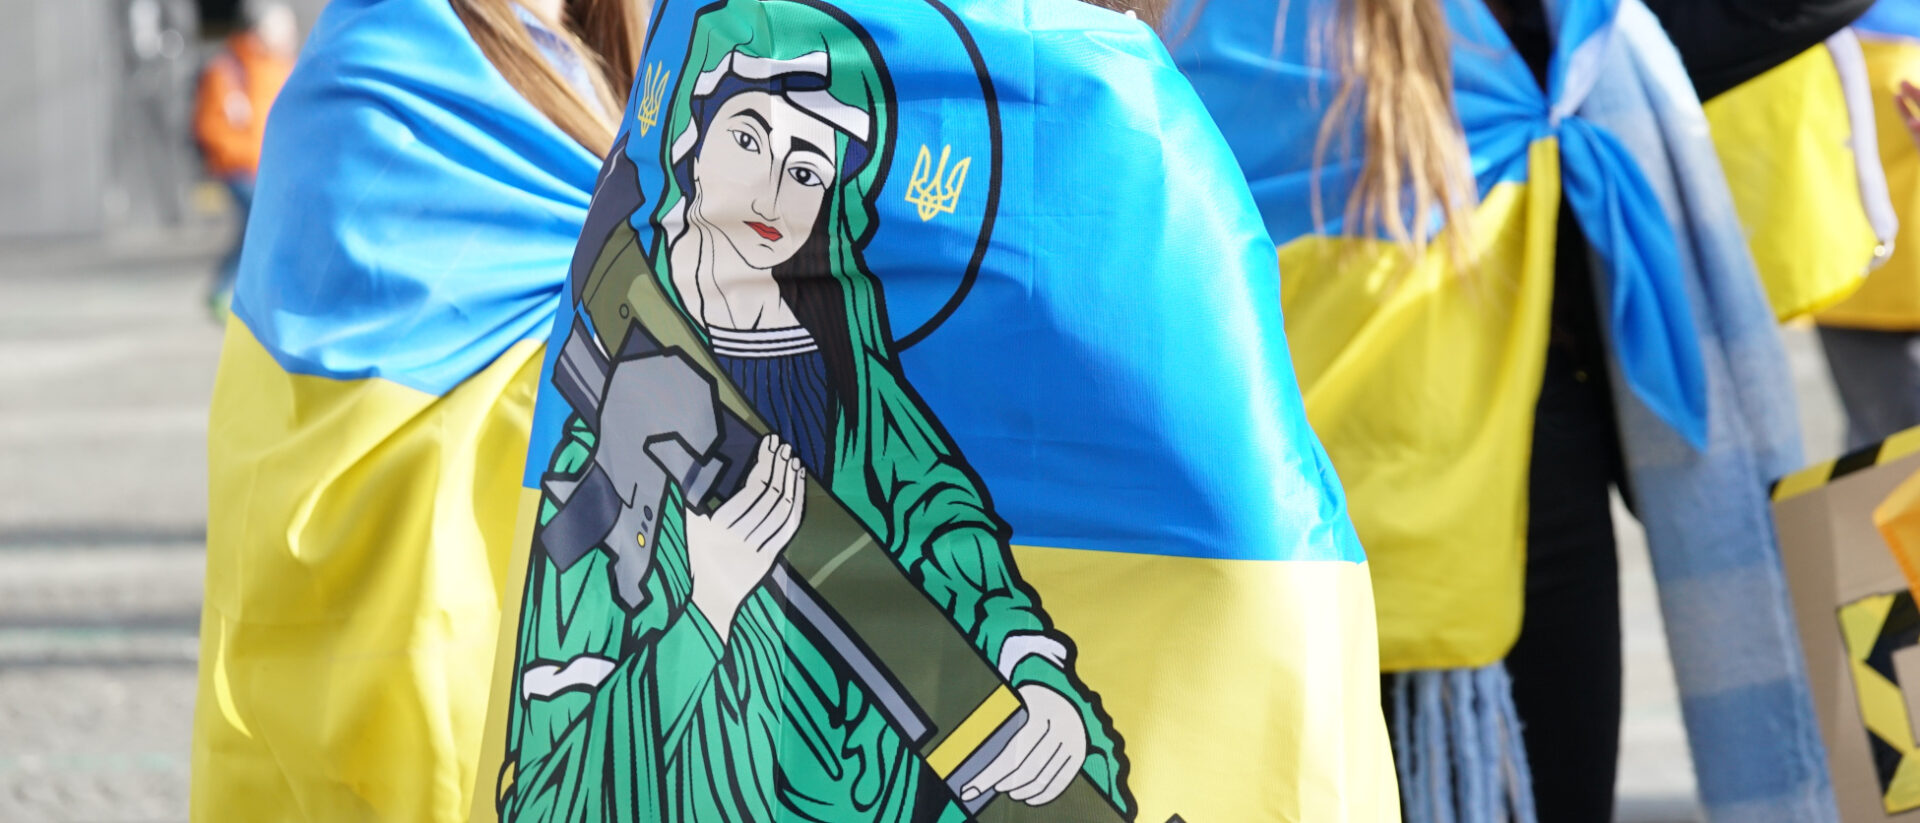 Beten für die Ukraine